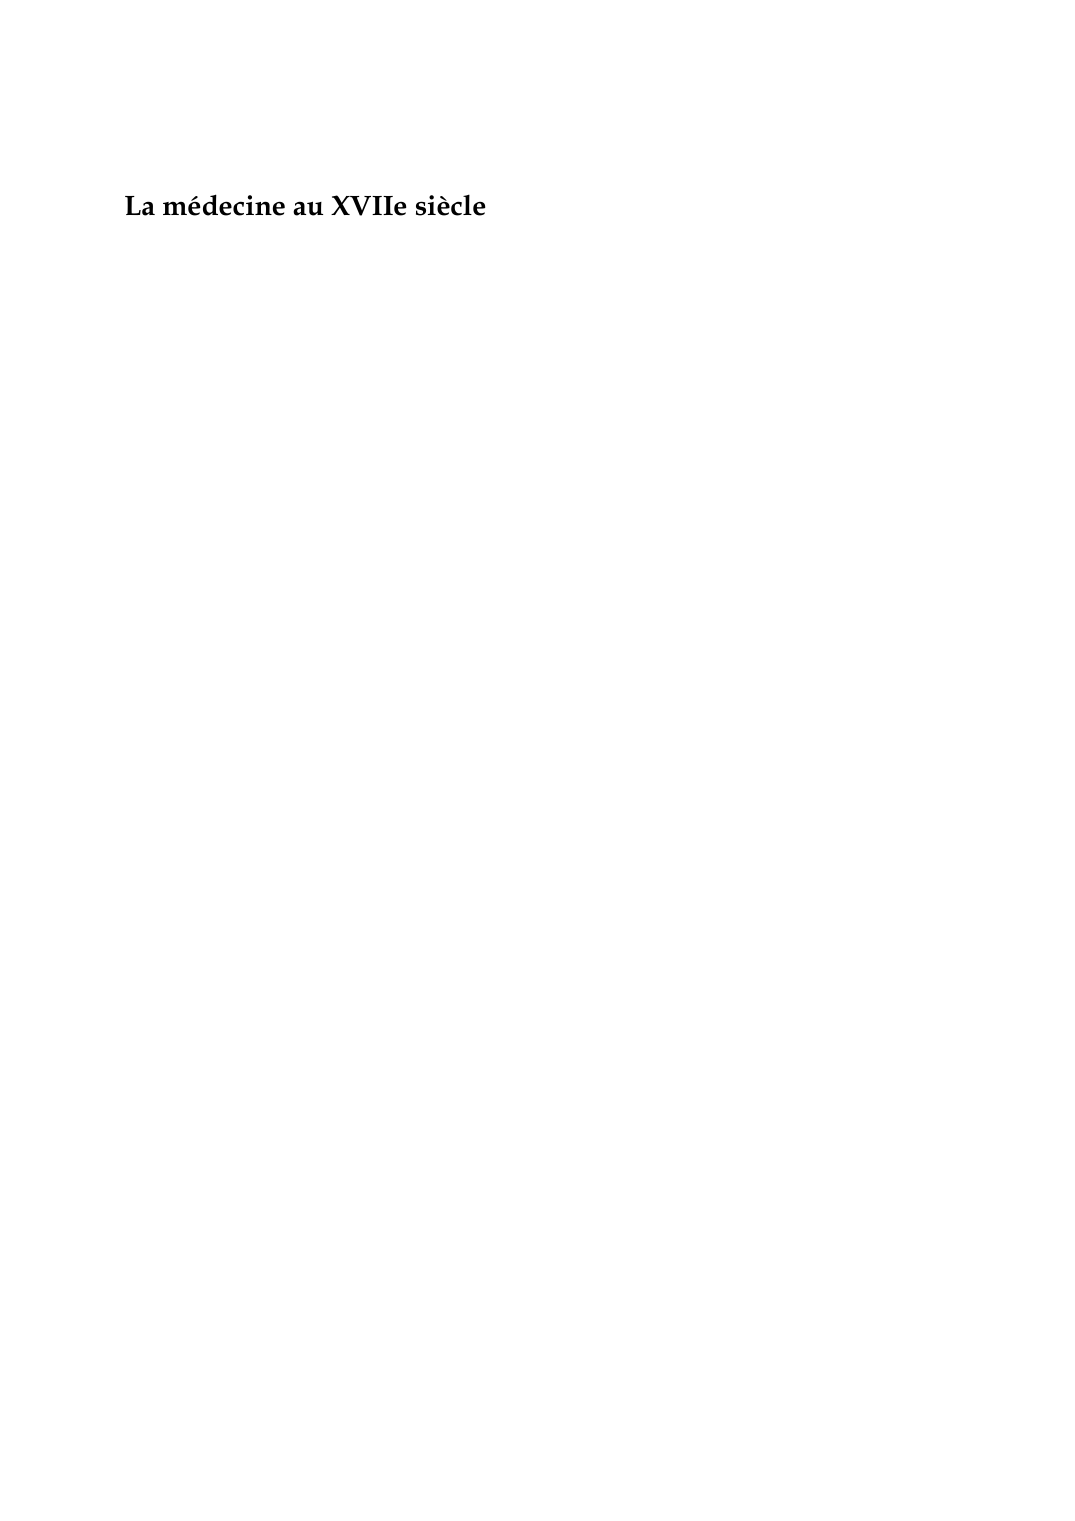 Prévisualisation du document La médecine au XVIIe siècle par Ernest WickersheimerStrasbourg L'amour médecin, Le Médecin malgré lui, Monsieur de Pourceaugnac : fantochesde noir habillés, chapeaux pointus.